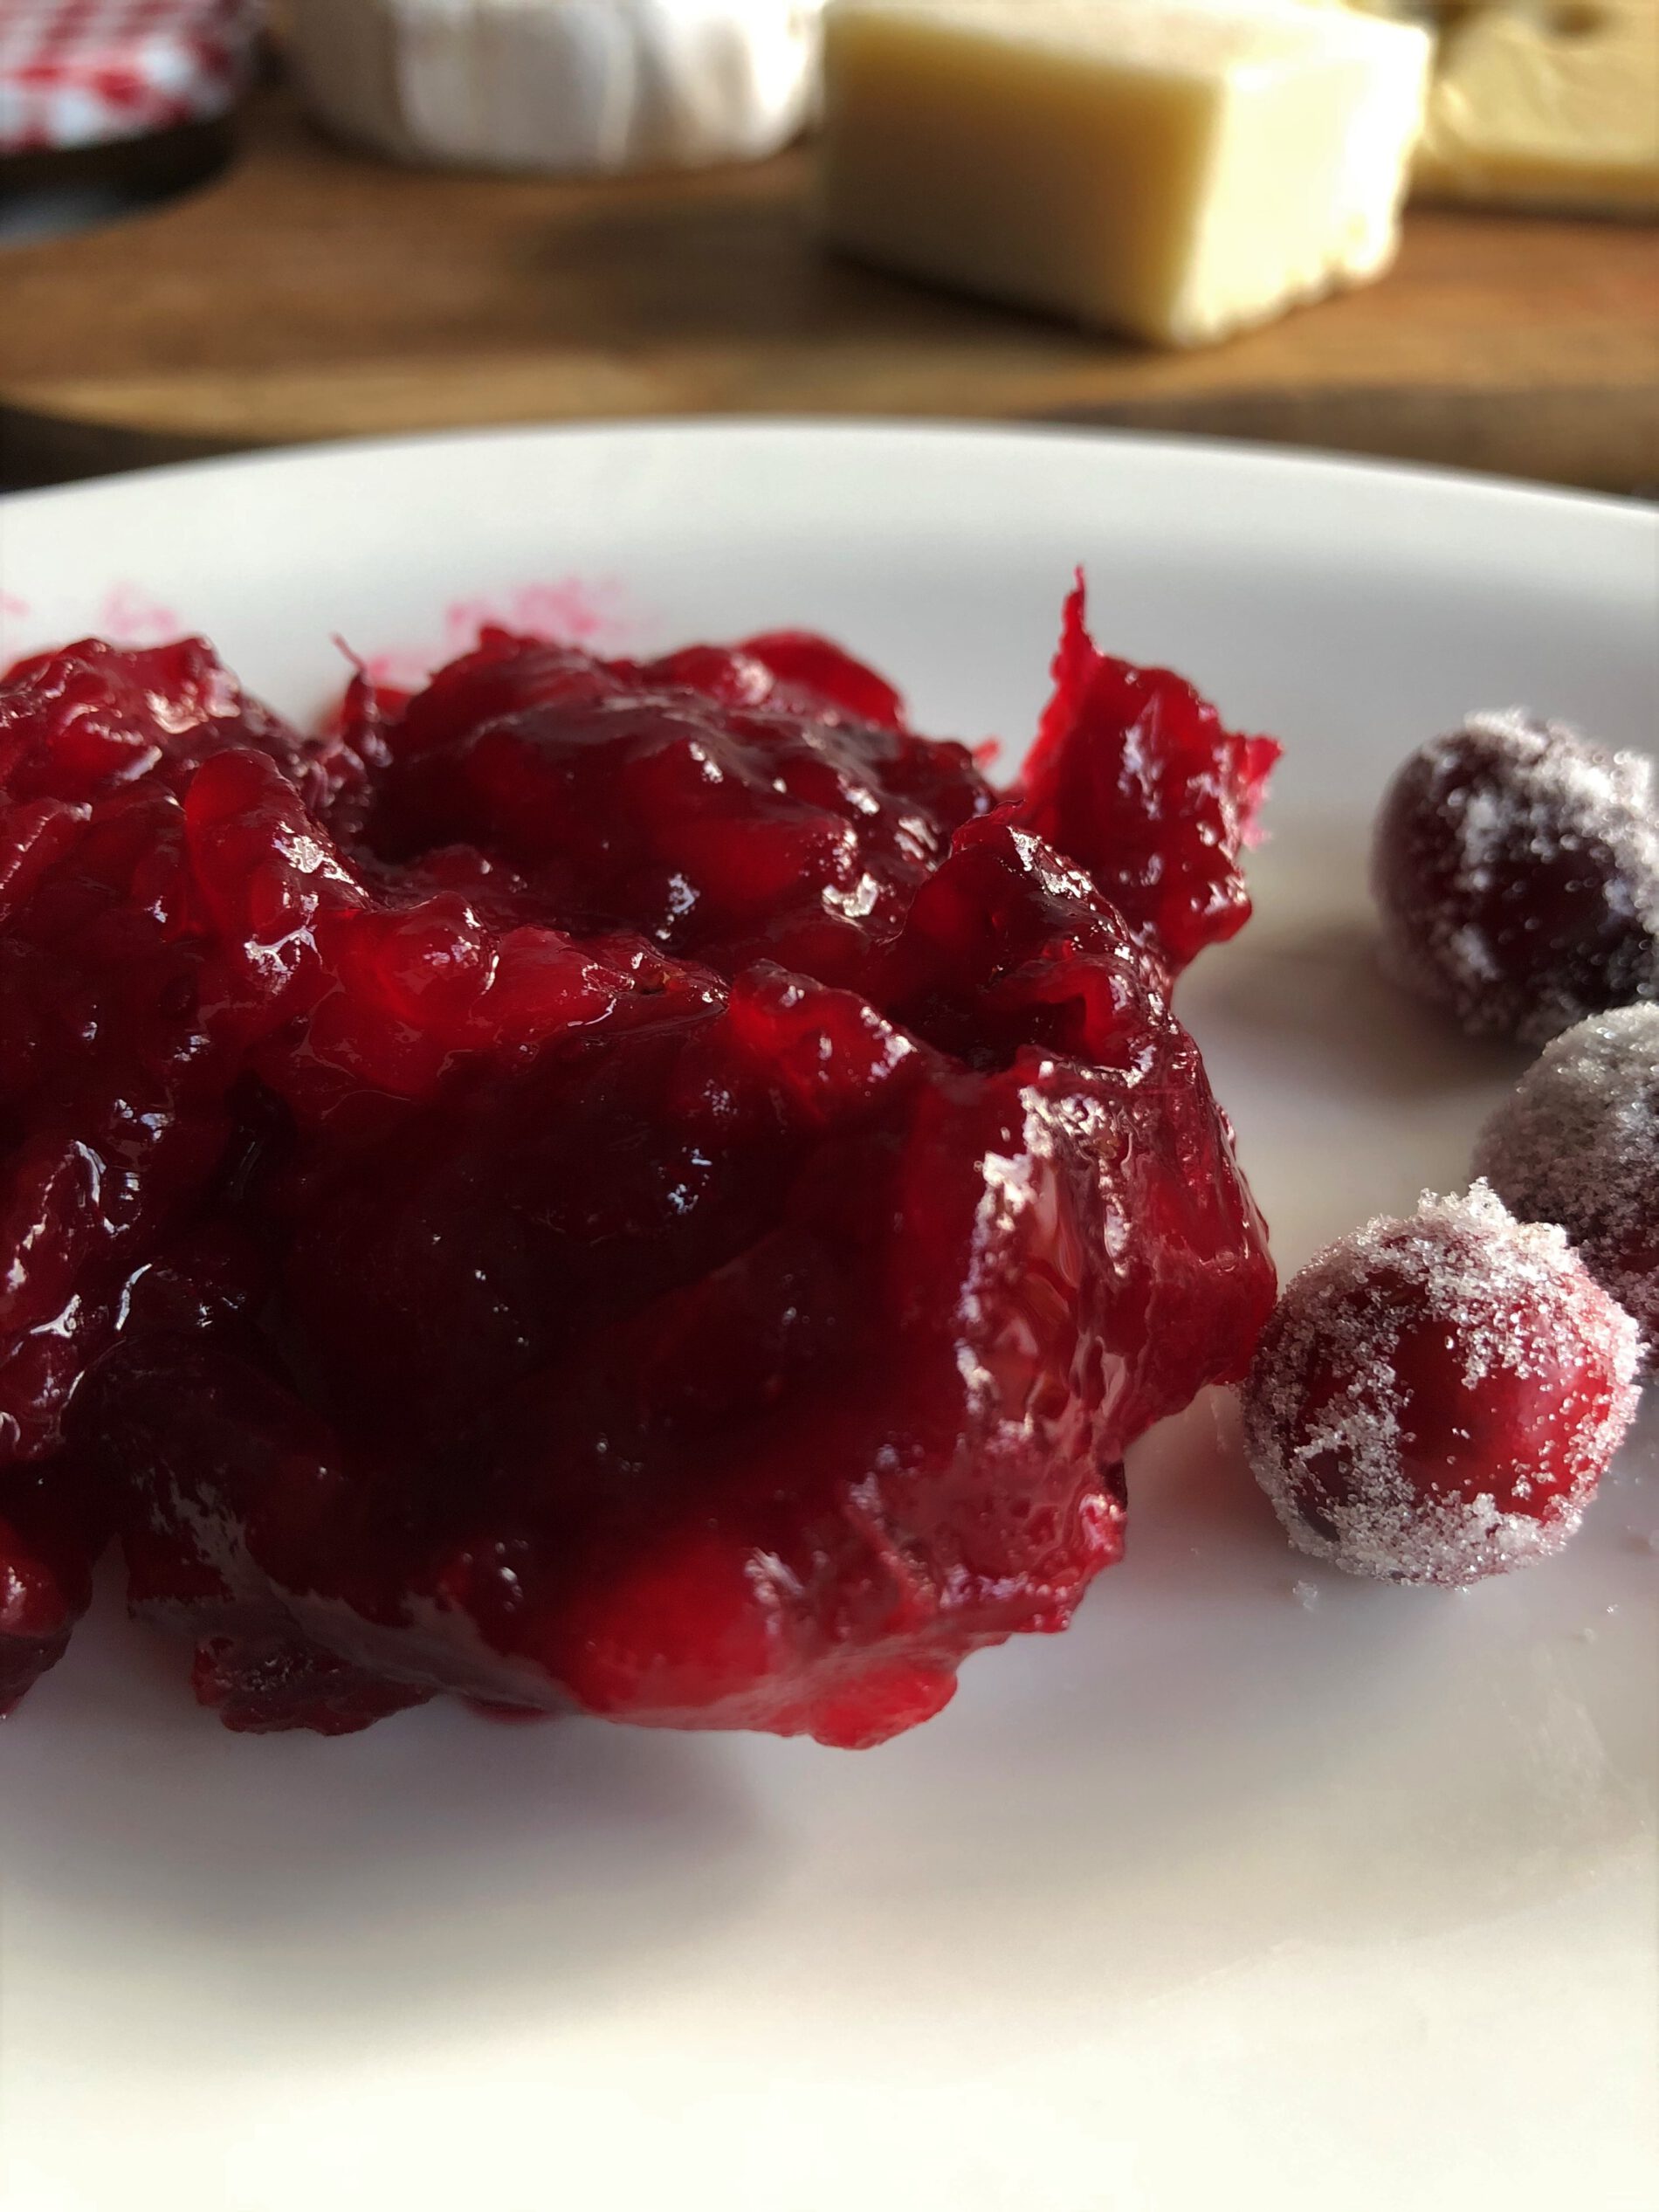 Cranberry Apfel Marmelade - Sparflämmchen